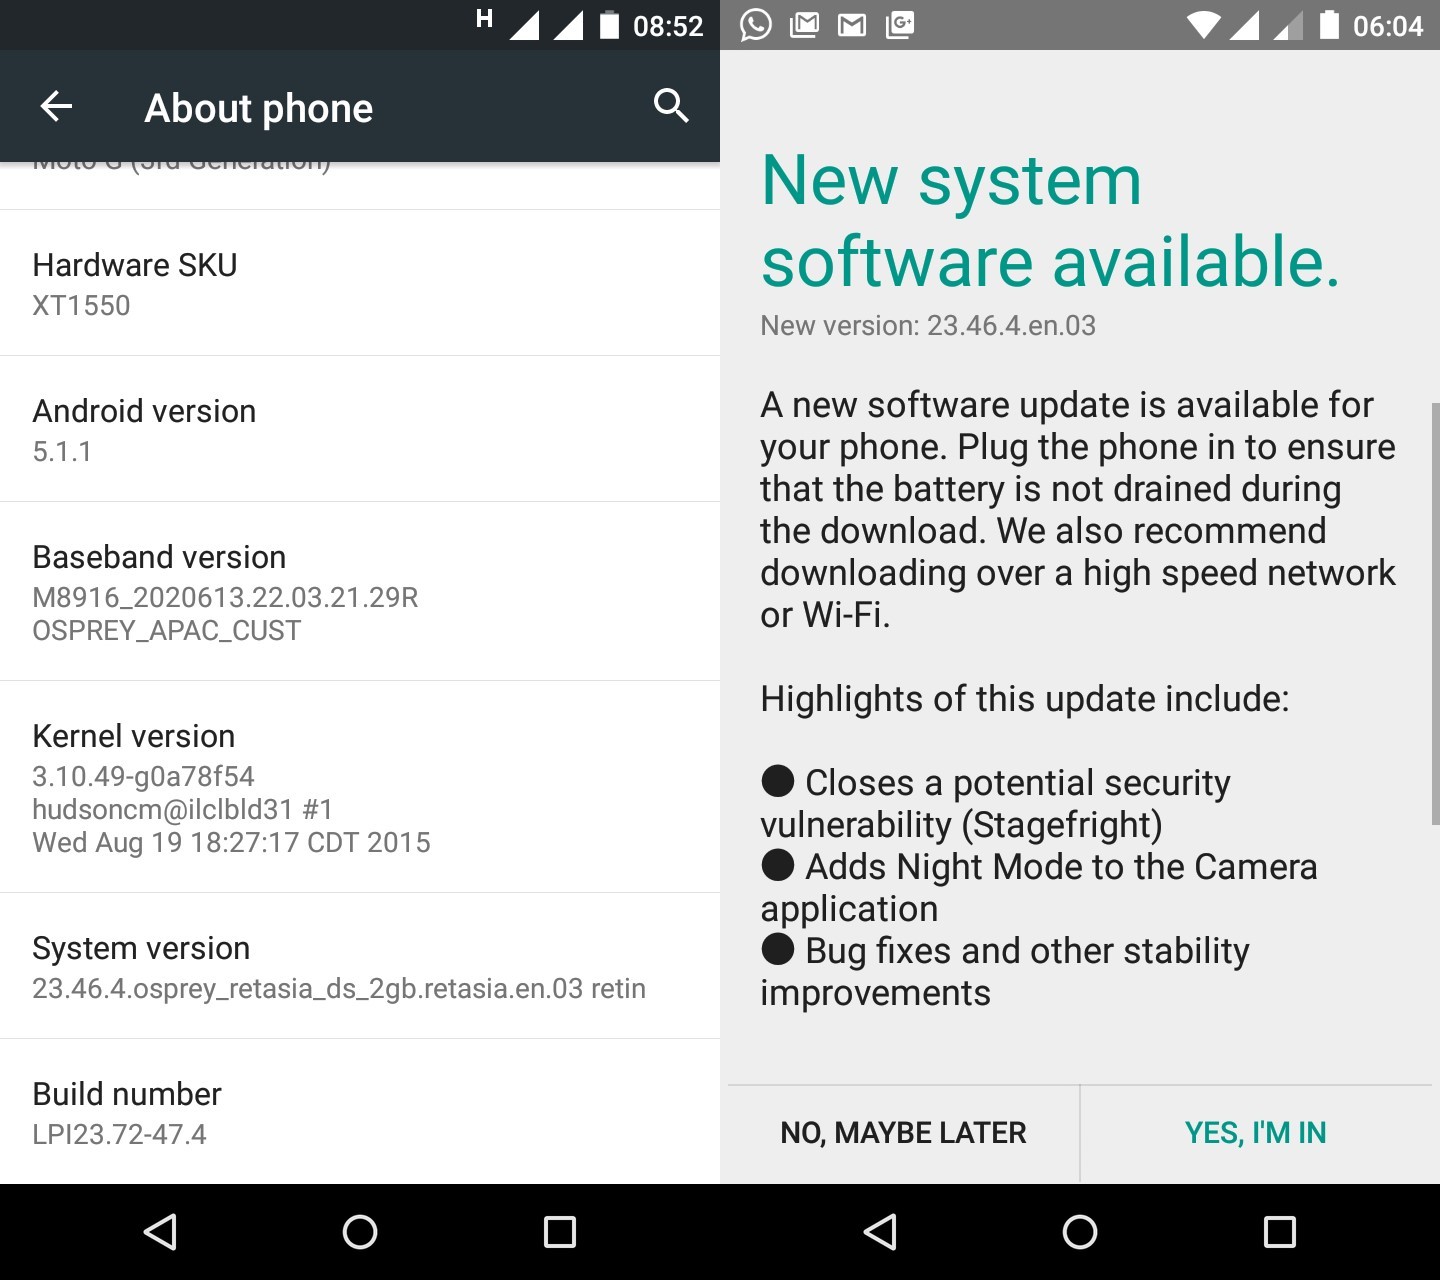 ¡Ya está disponible la nueva actualización de software para Moto G 3rd Gen con build LPI23.72-47.4!